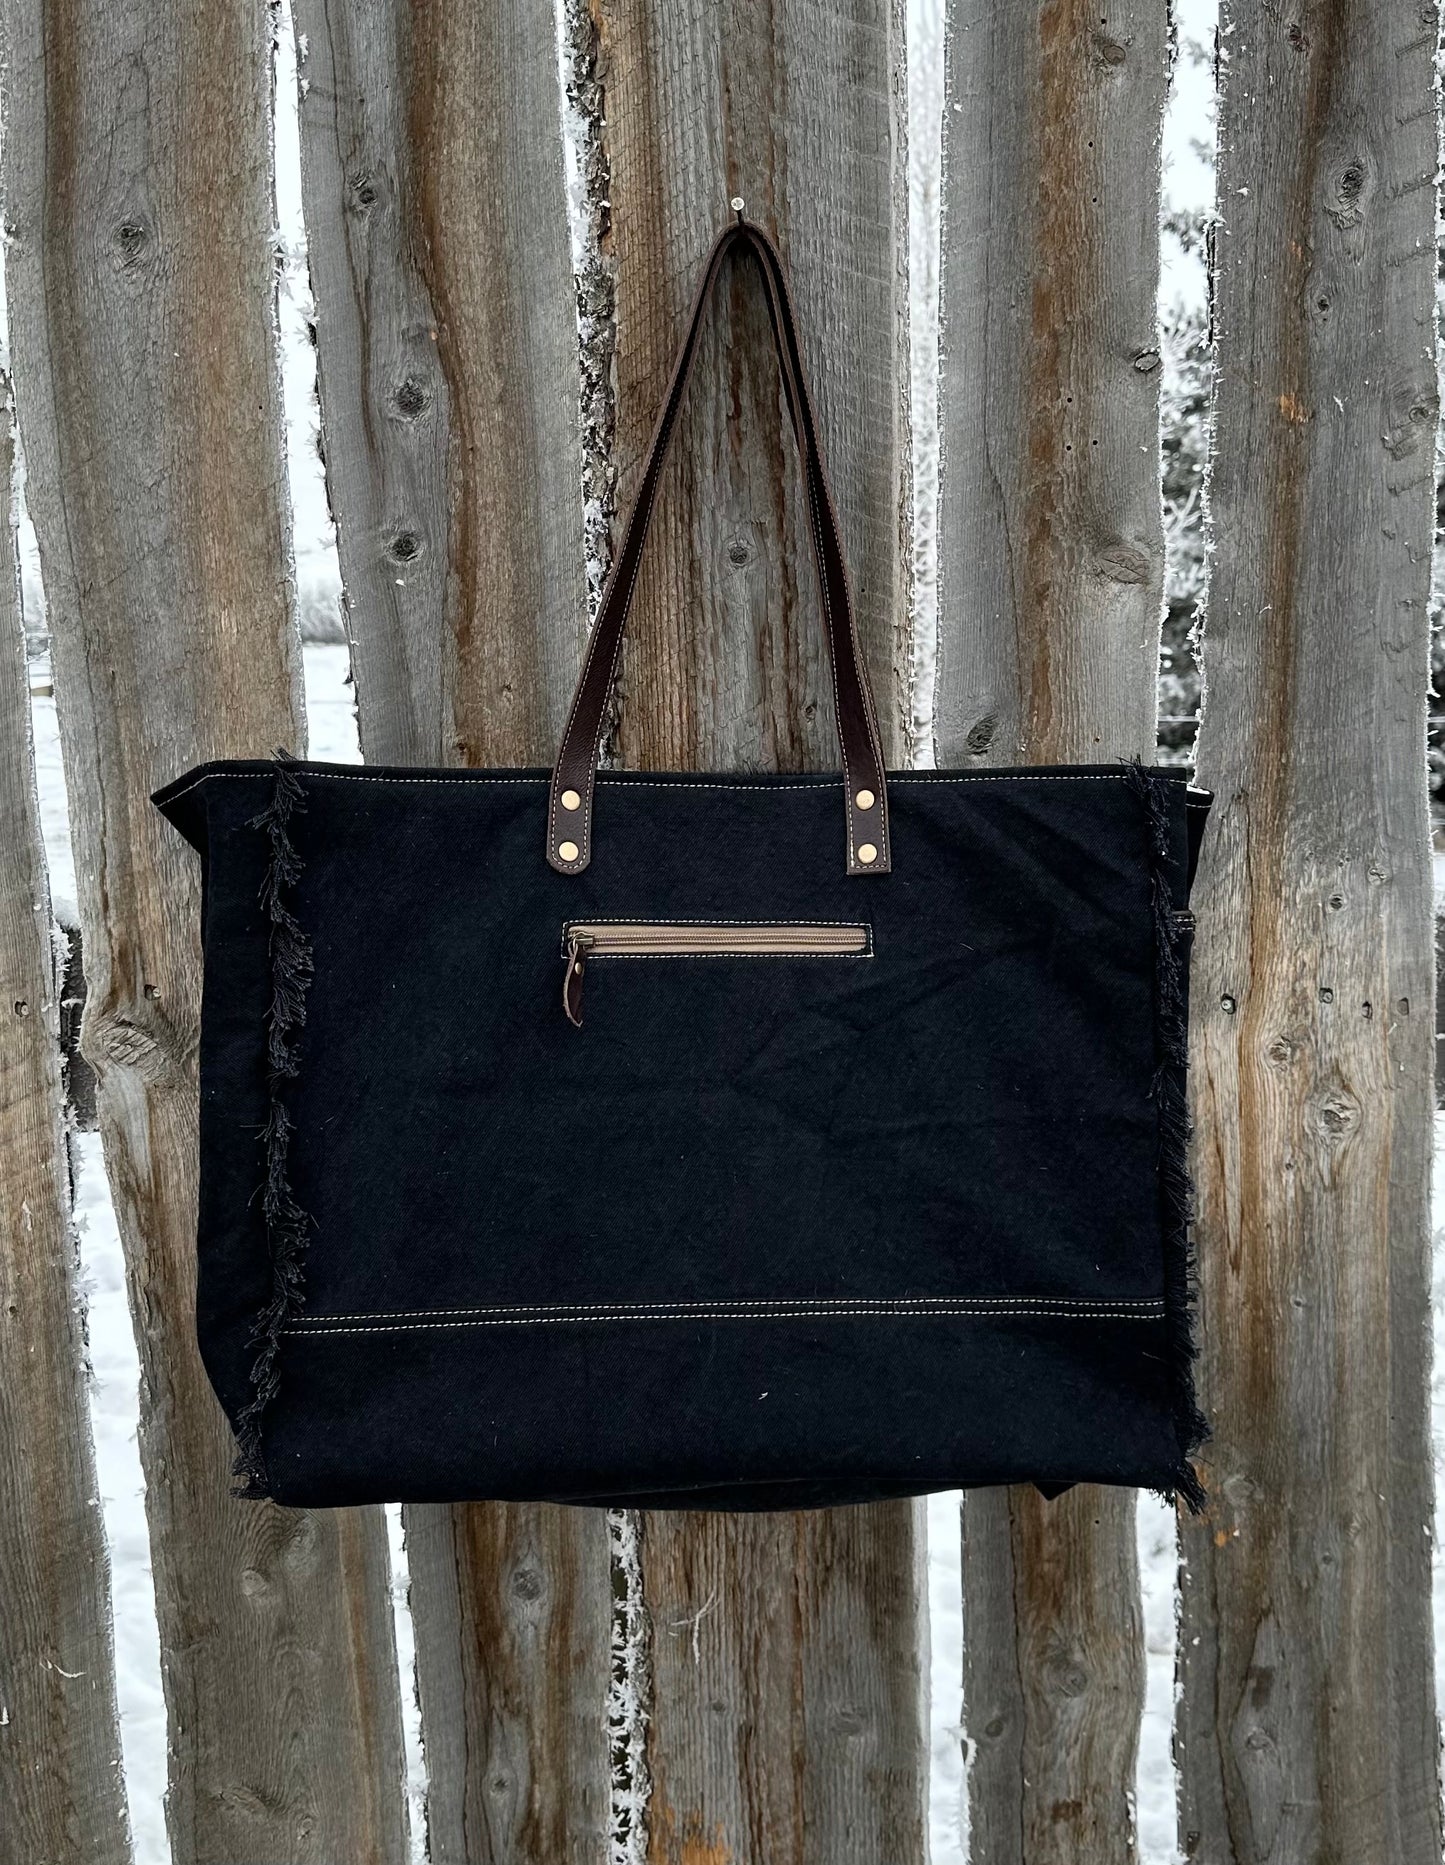 Black & White Cowhide Turquoise Embossed Leather Weekender Bag